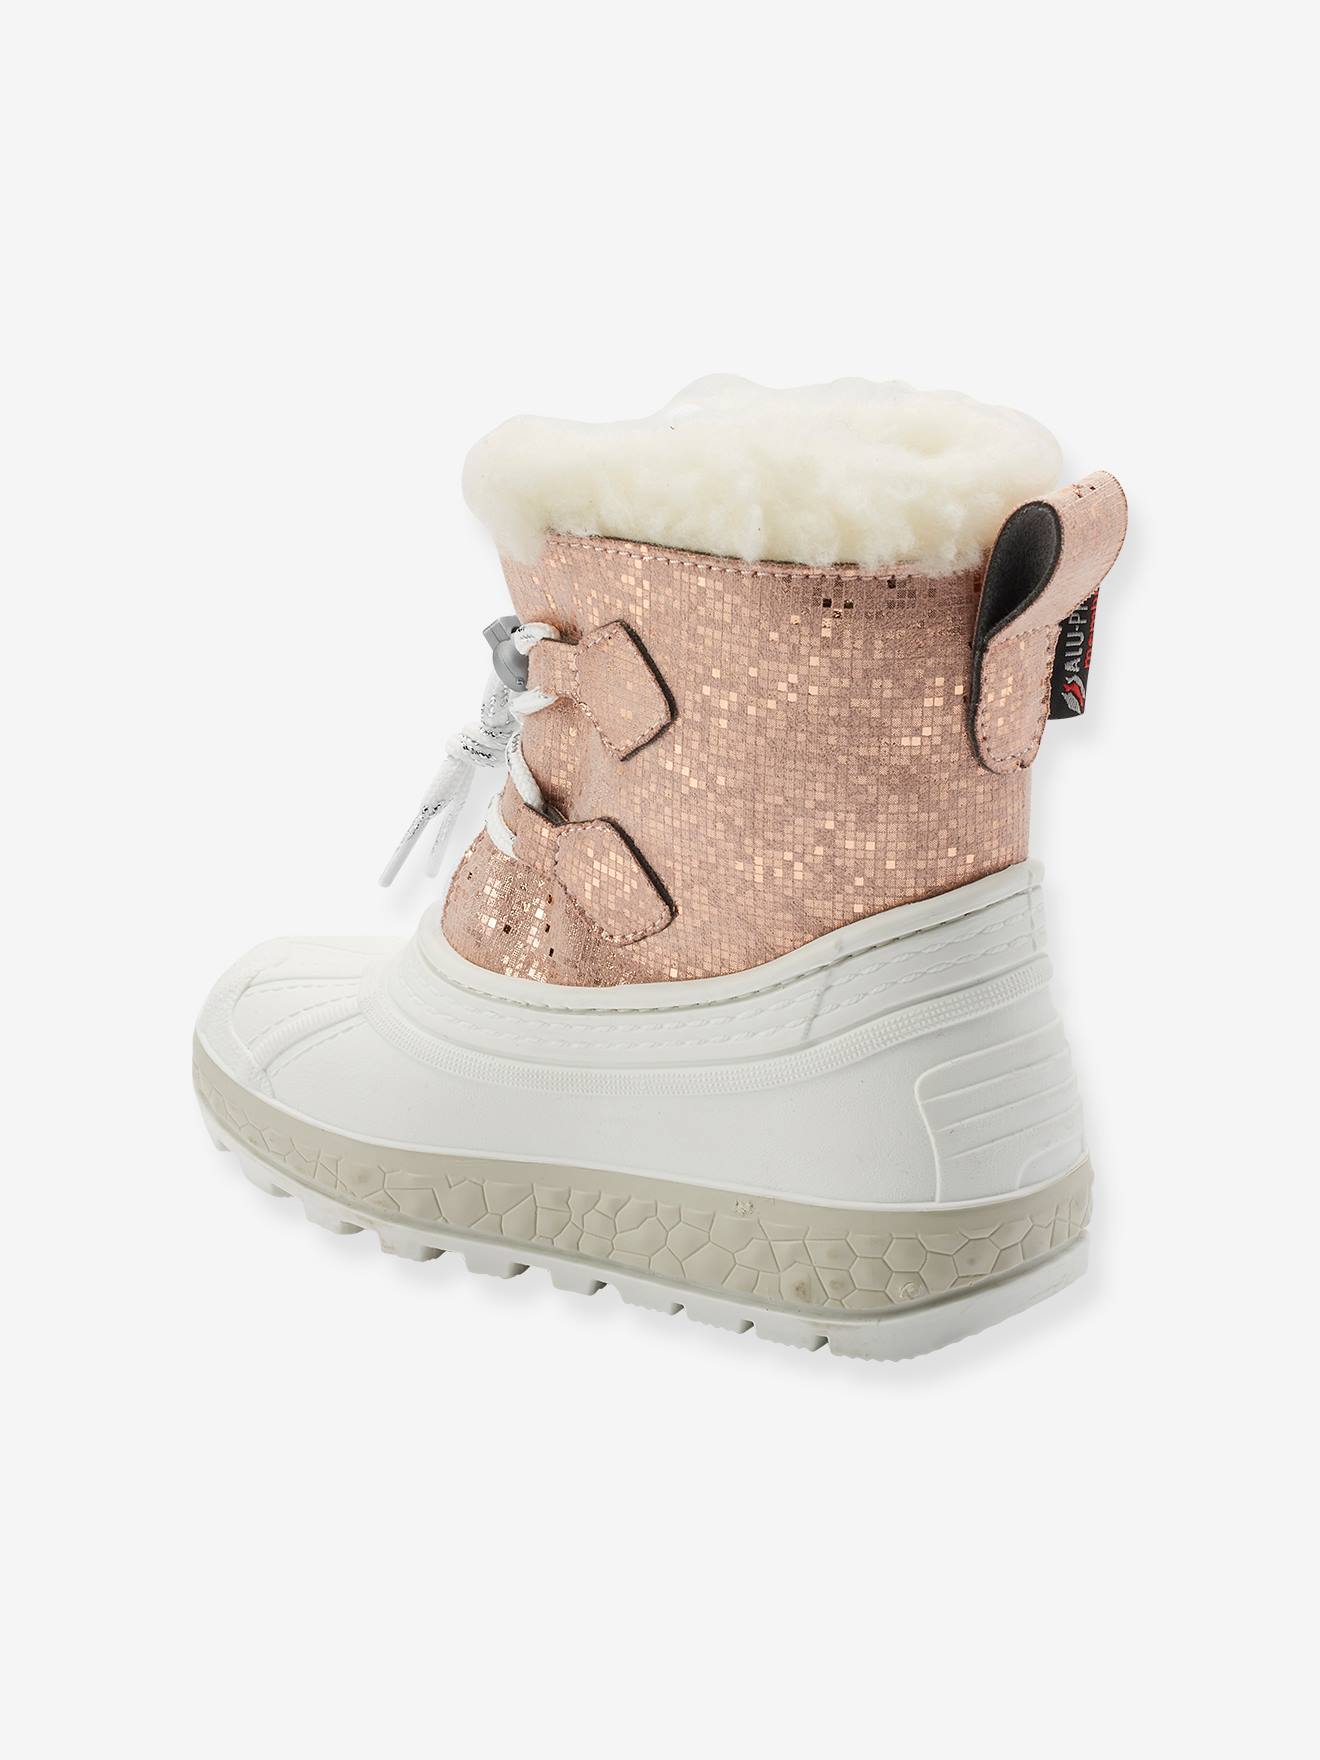 Bottes neige enfant APRES SKI Shoes Fille Chaussures Bottes Bottes de neige 